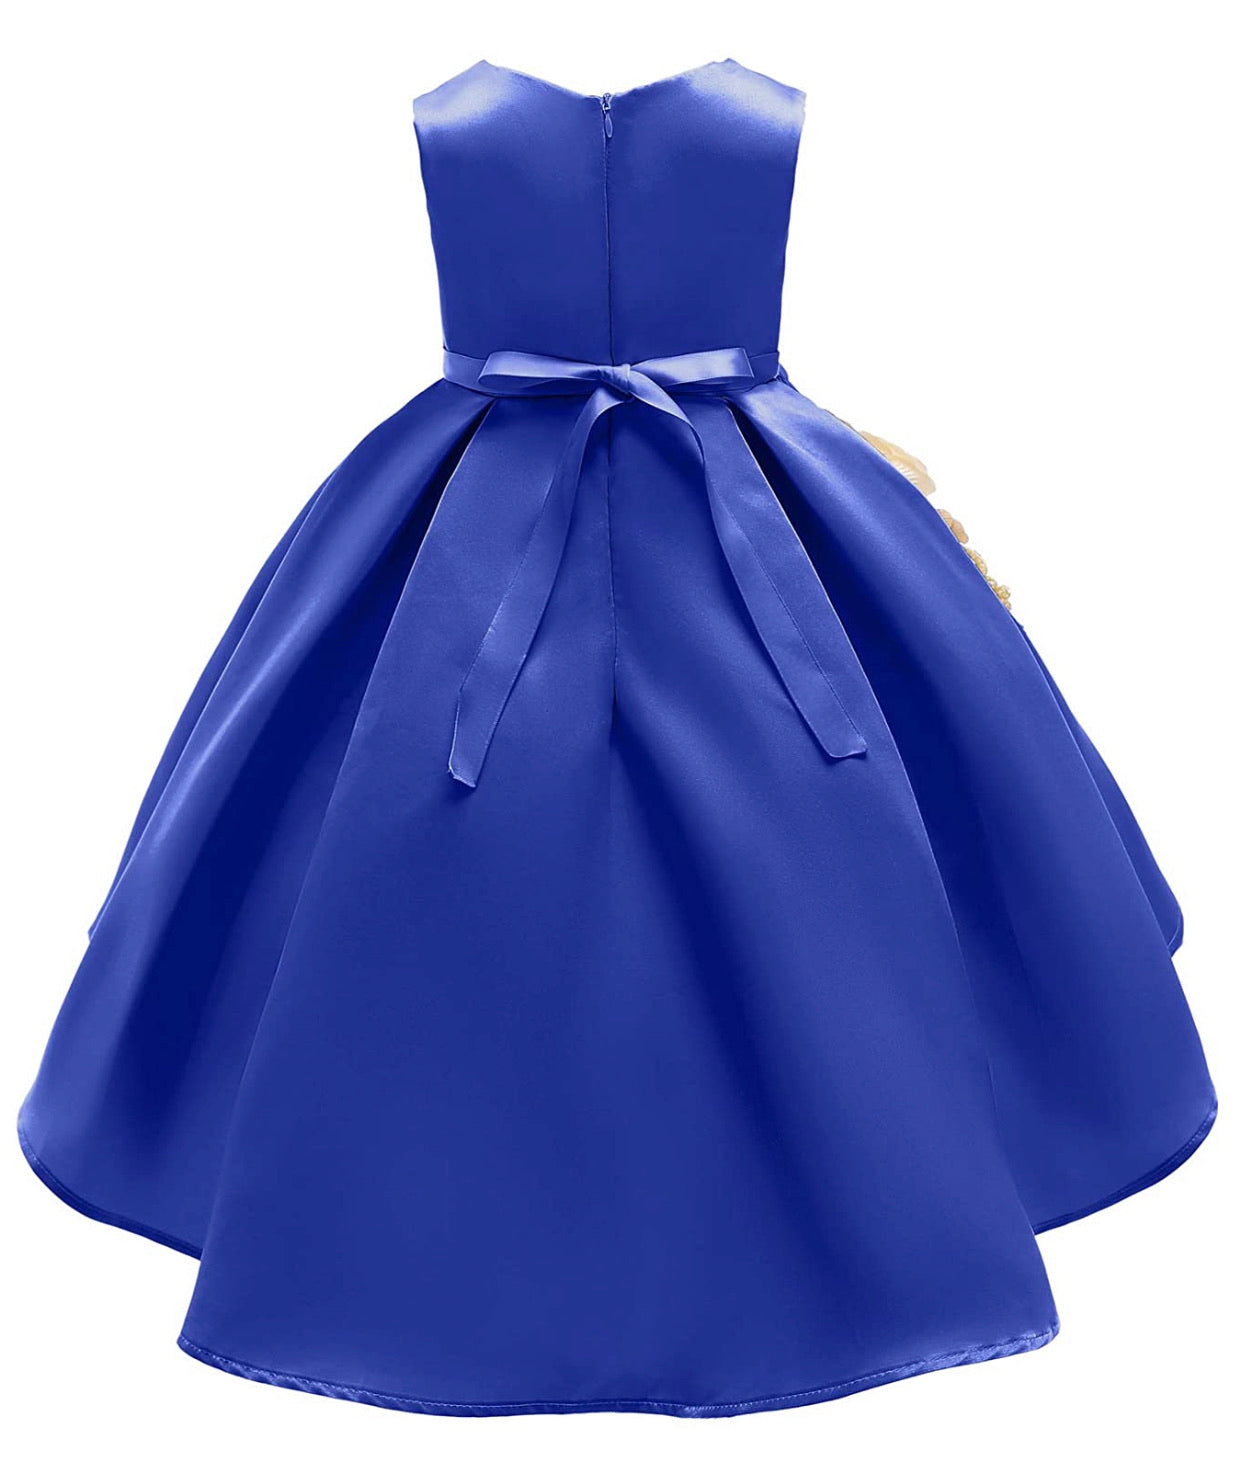 Lovely Full Flower Girl’s Dress, Sizes 2T - 9 (Royal Blue)